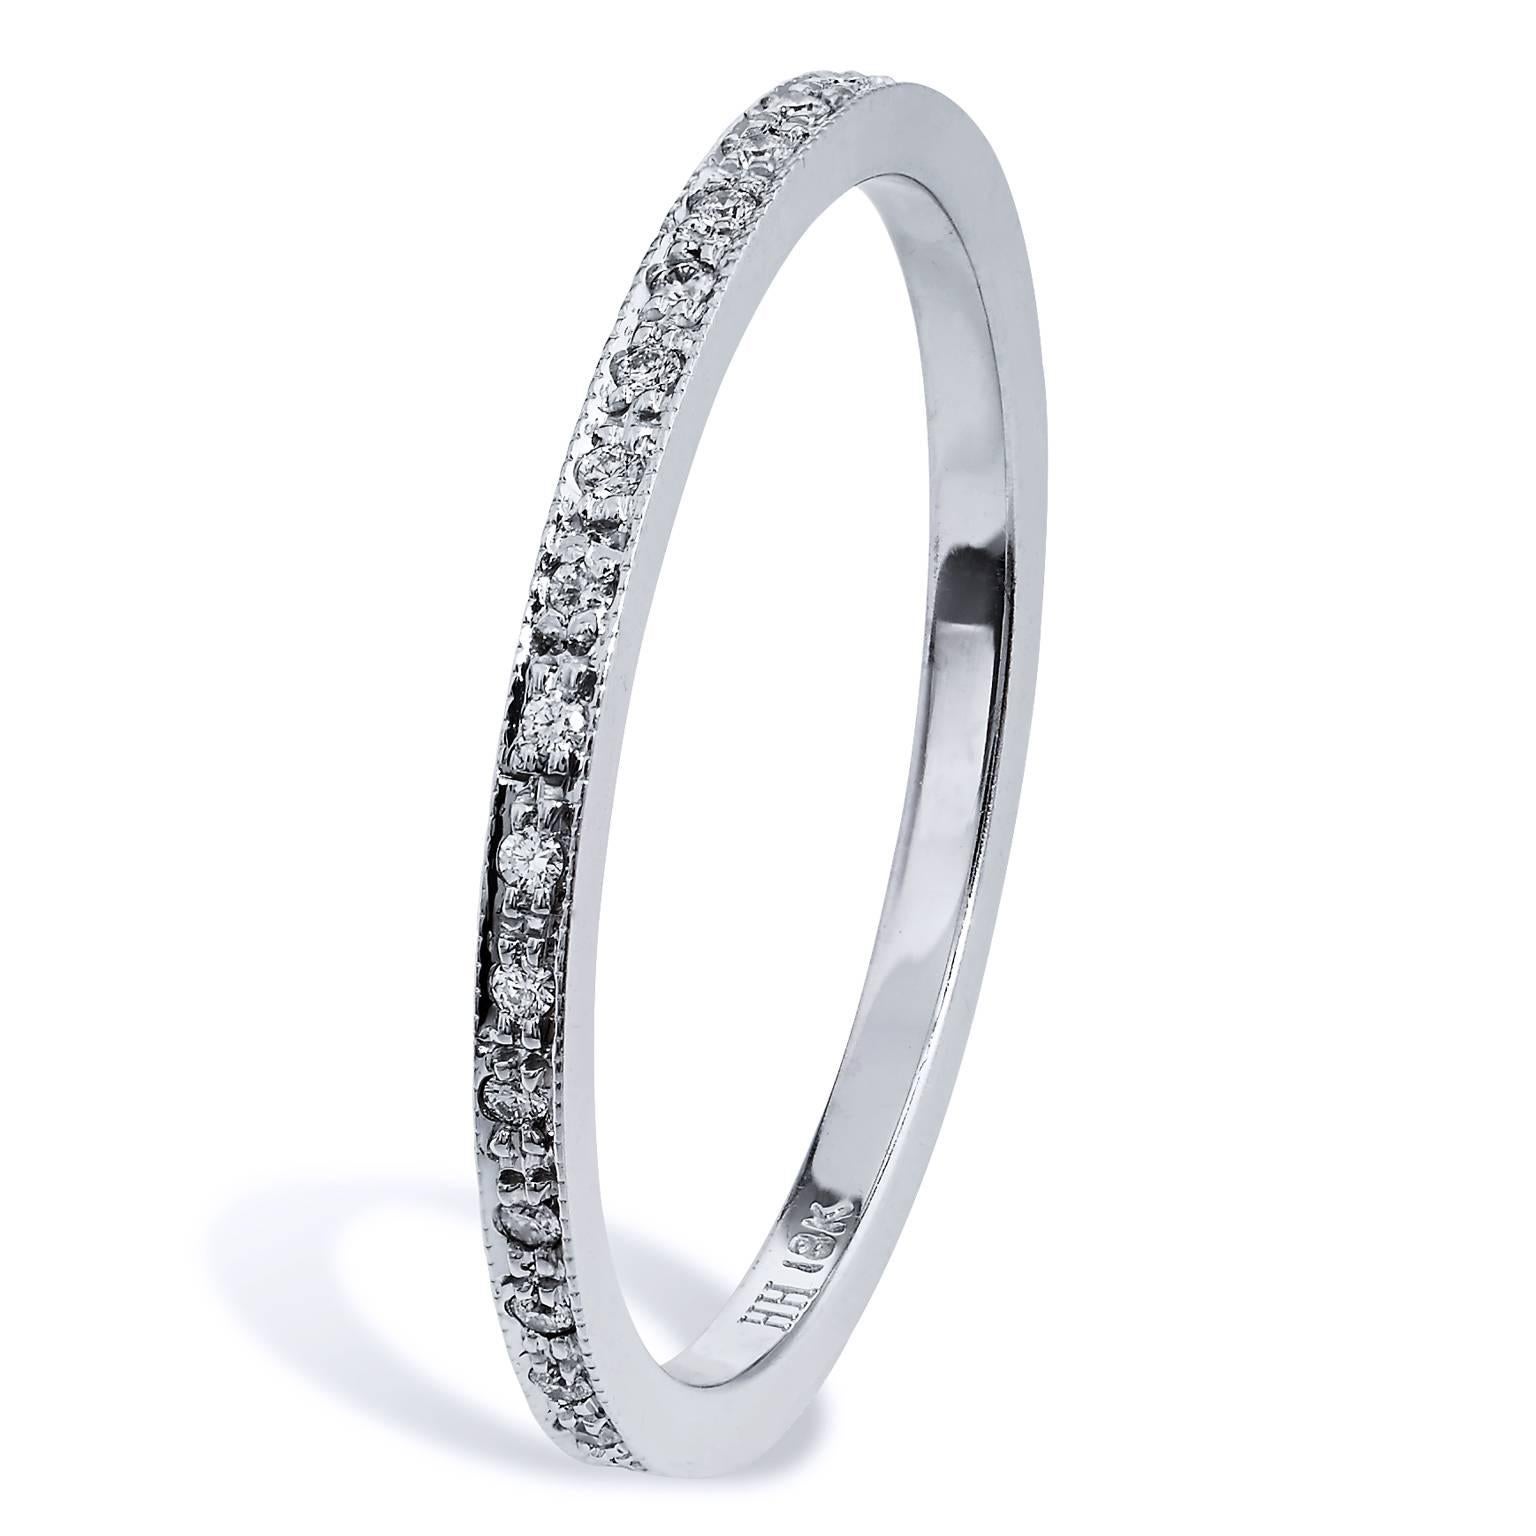 Round Cut 0.12 Carat Diamond 18 Karat White Gold Band Ring